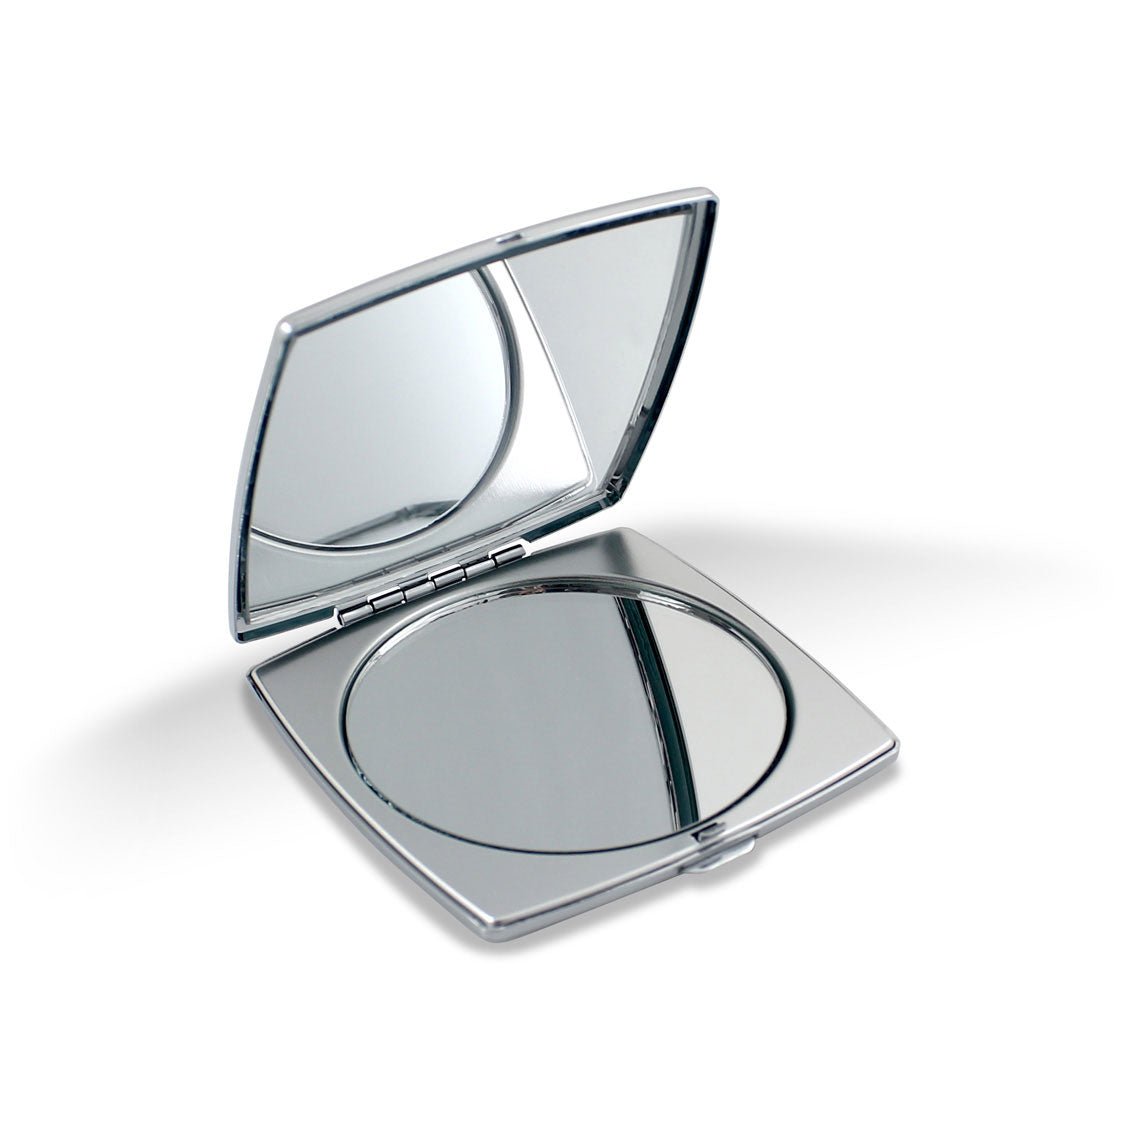 ACME Studio EYELASHES Compact Mirror Gene Meyer | Panik Design